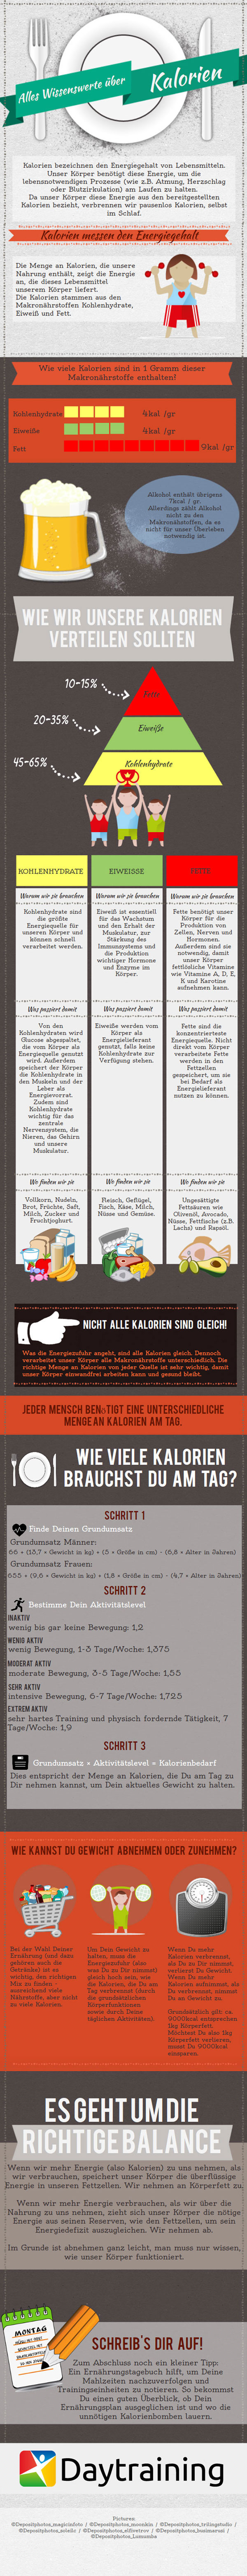 Alles wissenswerte über Kalorien - Infografik von Daytraining.de